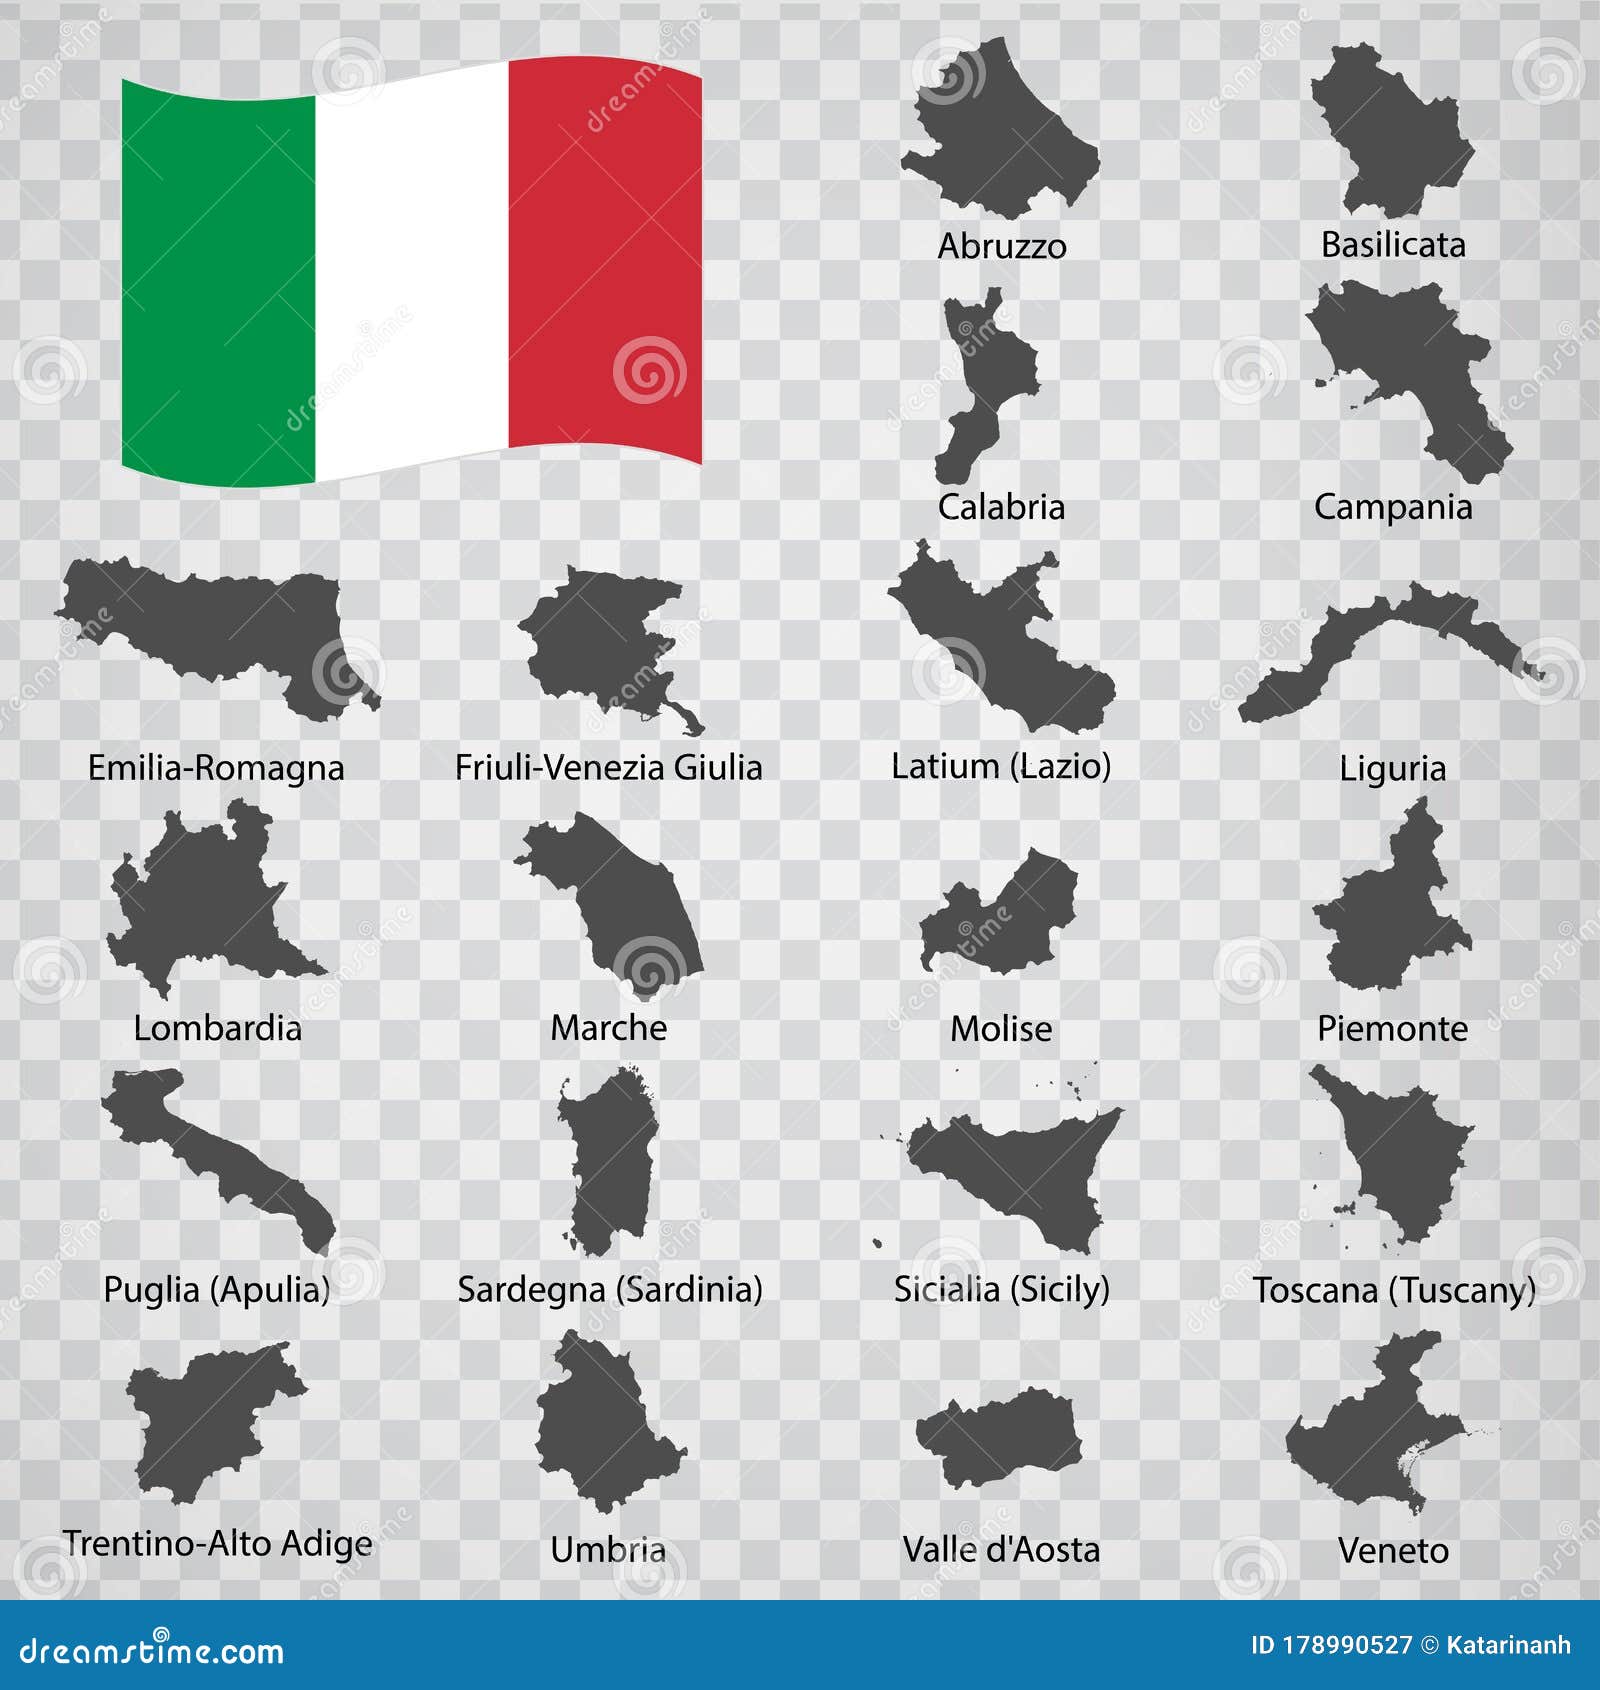 twenty maps regionÃâ of italy - alphabetical order with name. every single map of region are listed and  with wordings